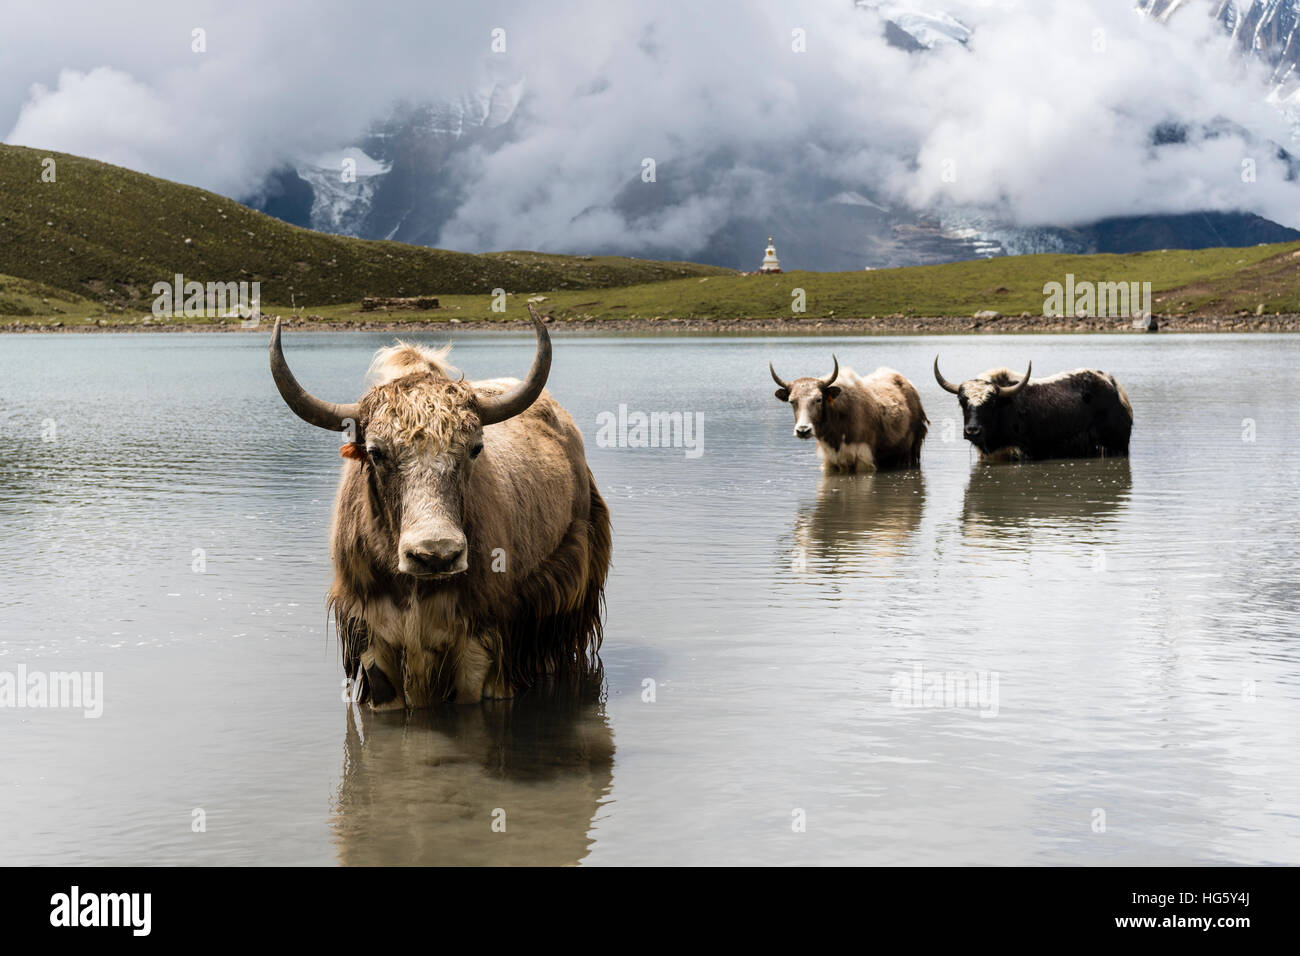 Yaks (Bos mutus) standing in water, Ice Lake, Braga, Manang District, Nepal Stock Photo